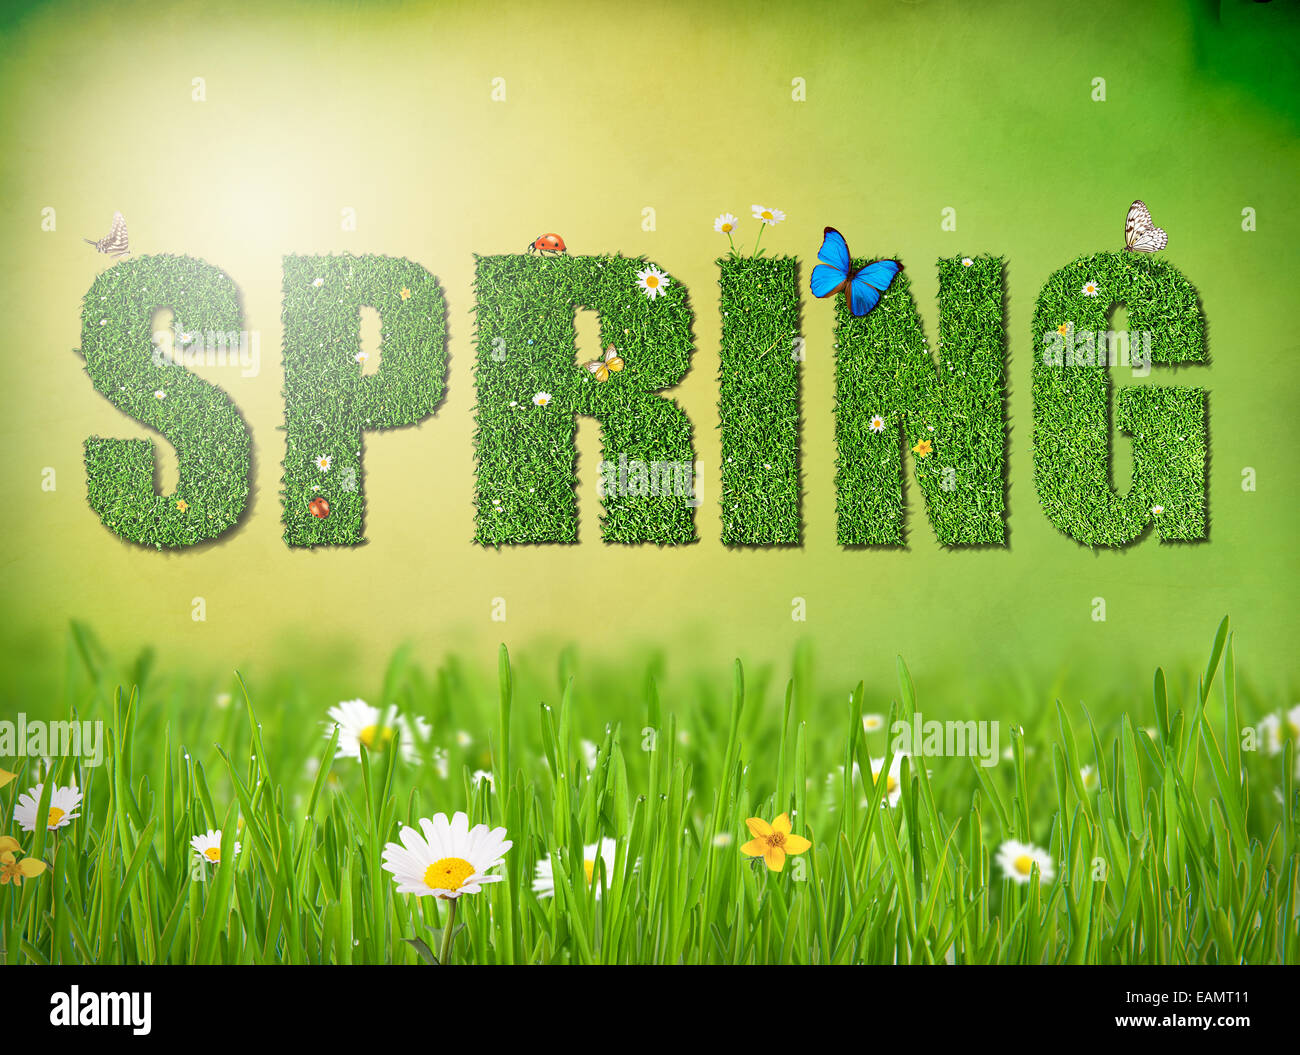 Frühling-Konzept des Wortes "Frühling" mit Blumen, Schmetterlingen und Kaninchen Stockfoto